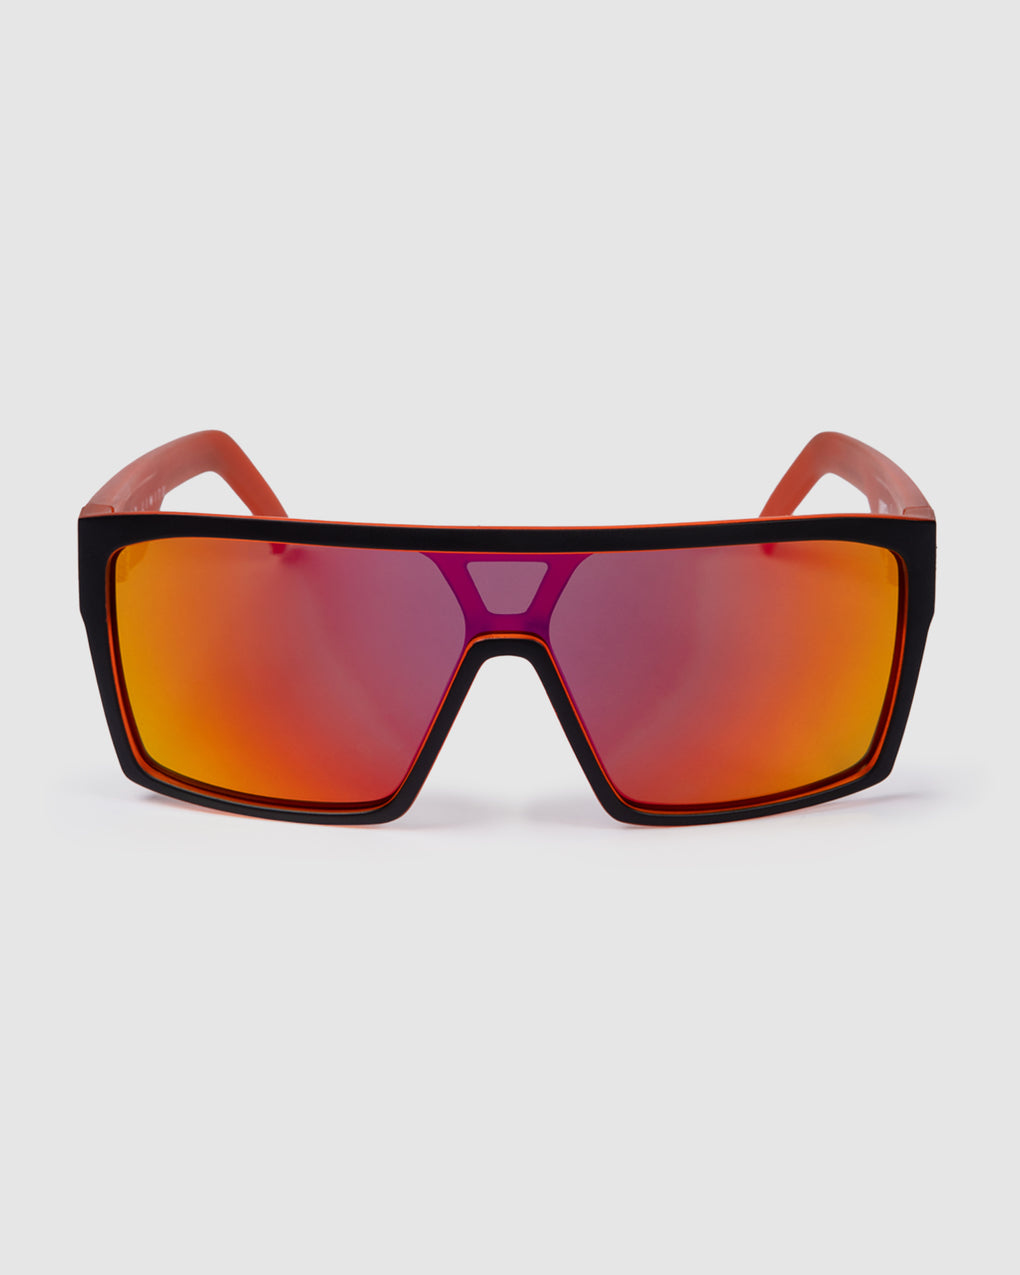 UNIT Command Sunglasses - Matte Black Orange Polarised